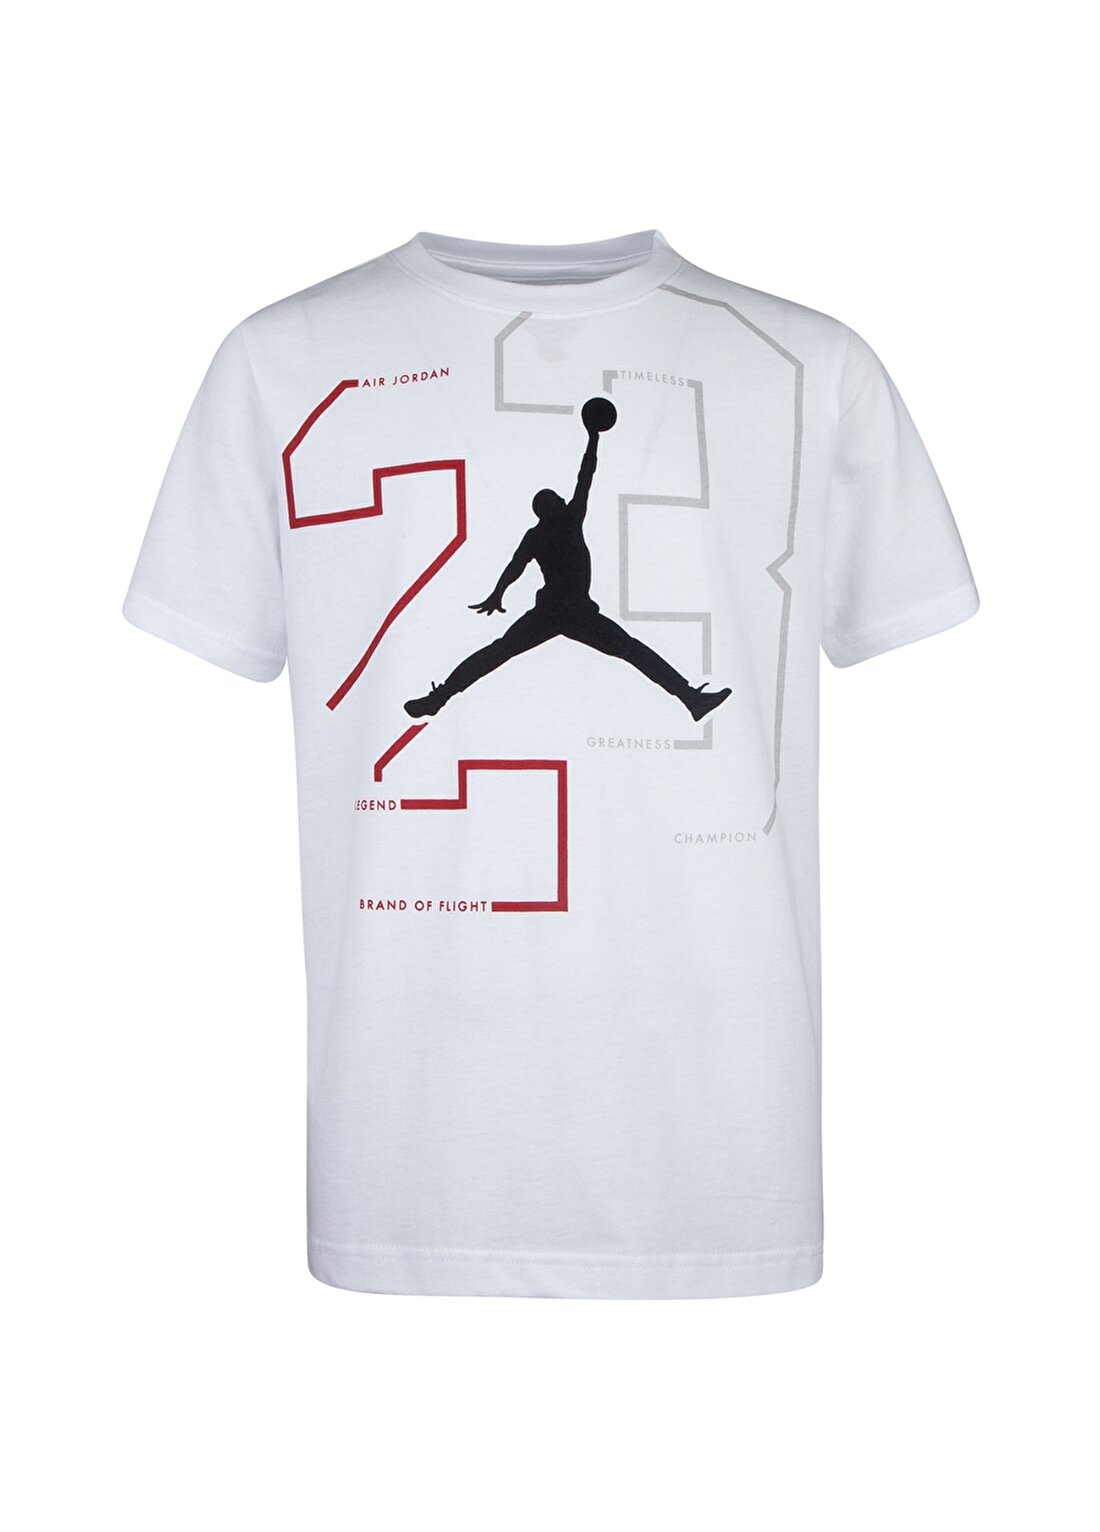 Nike 95A065-001 Air Jordan Path Of Greatness T-Shirt